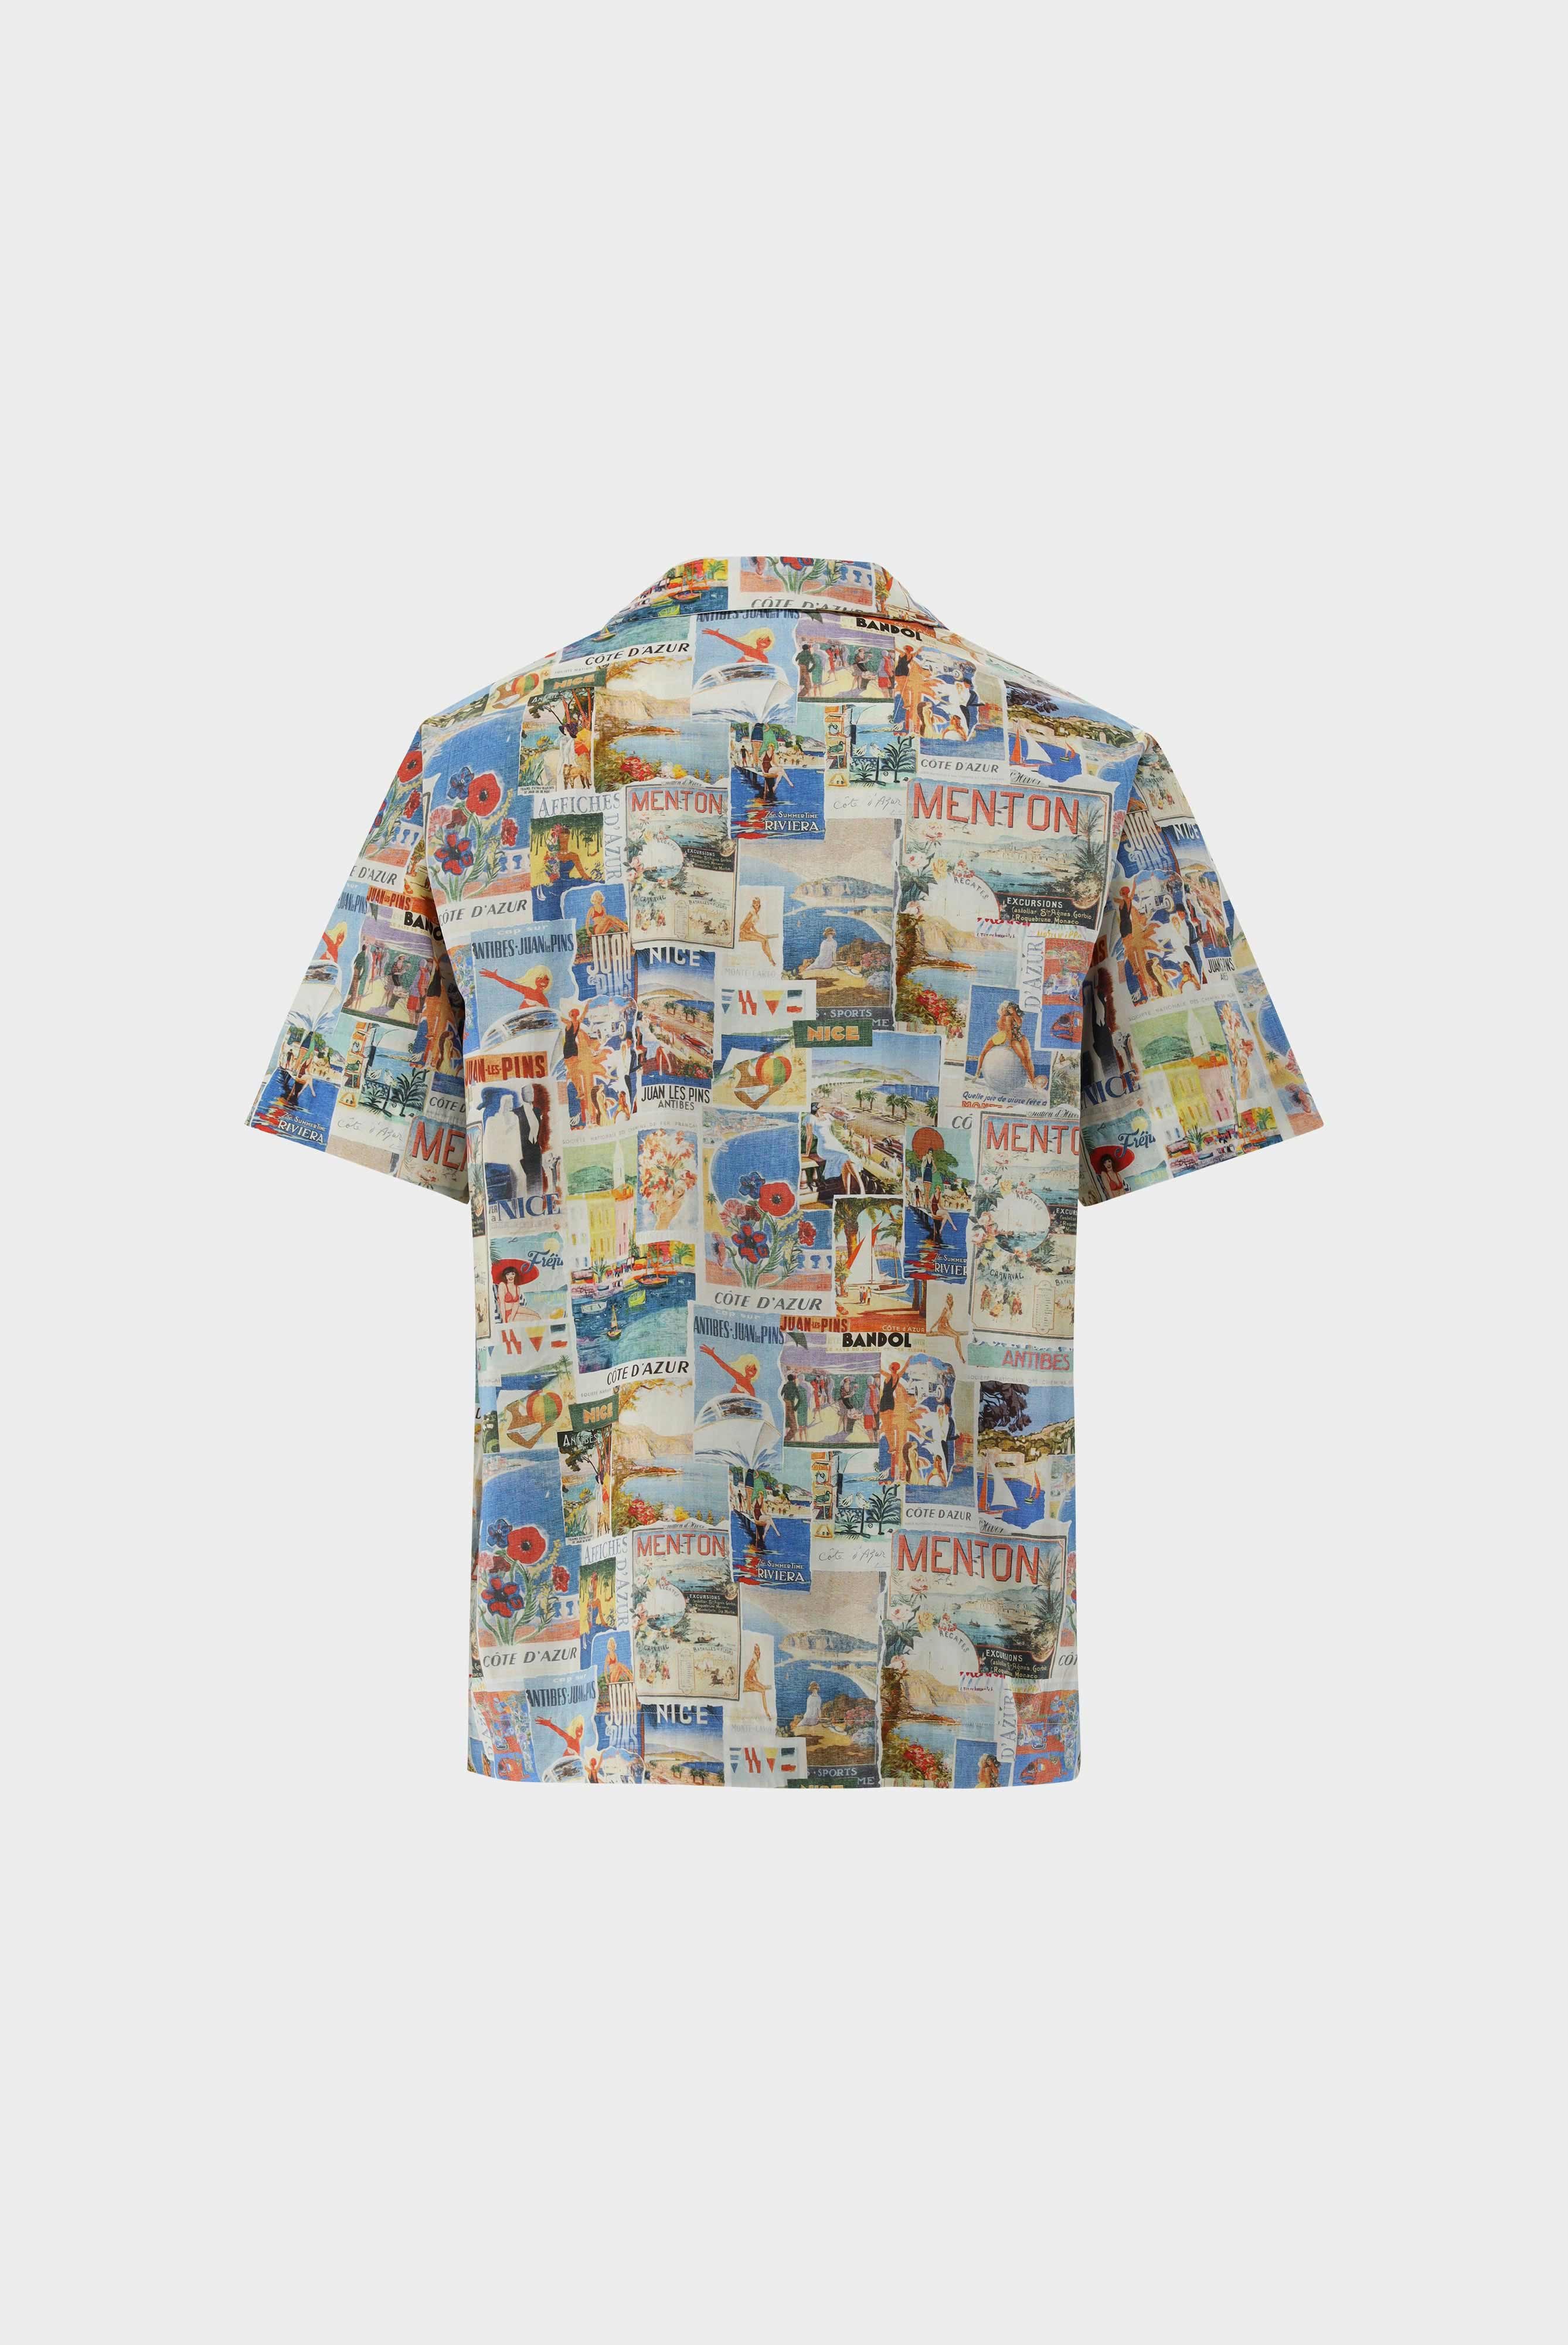 Casual Shirts+Printed Short Sleeve Shirt+20.2075.RD.170194.743.S